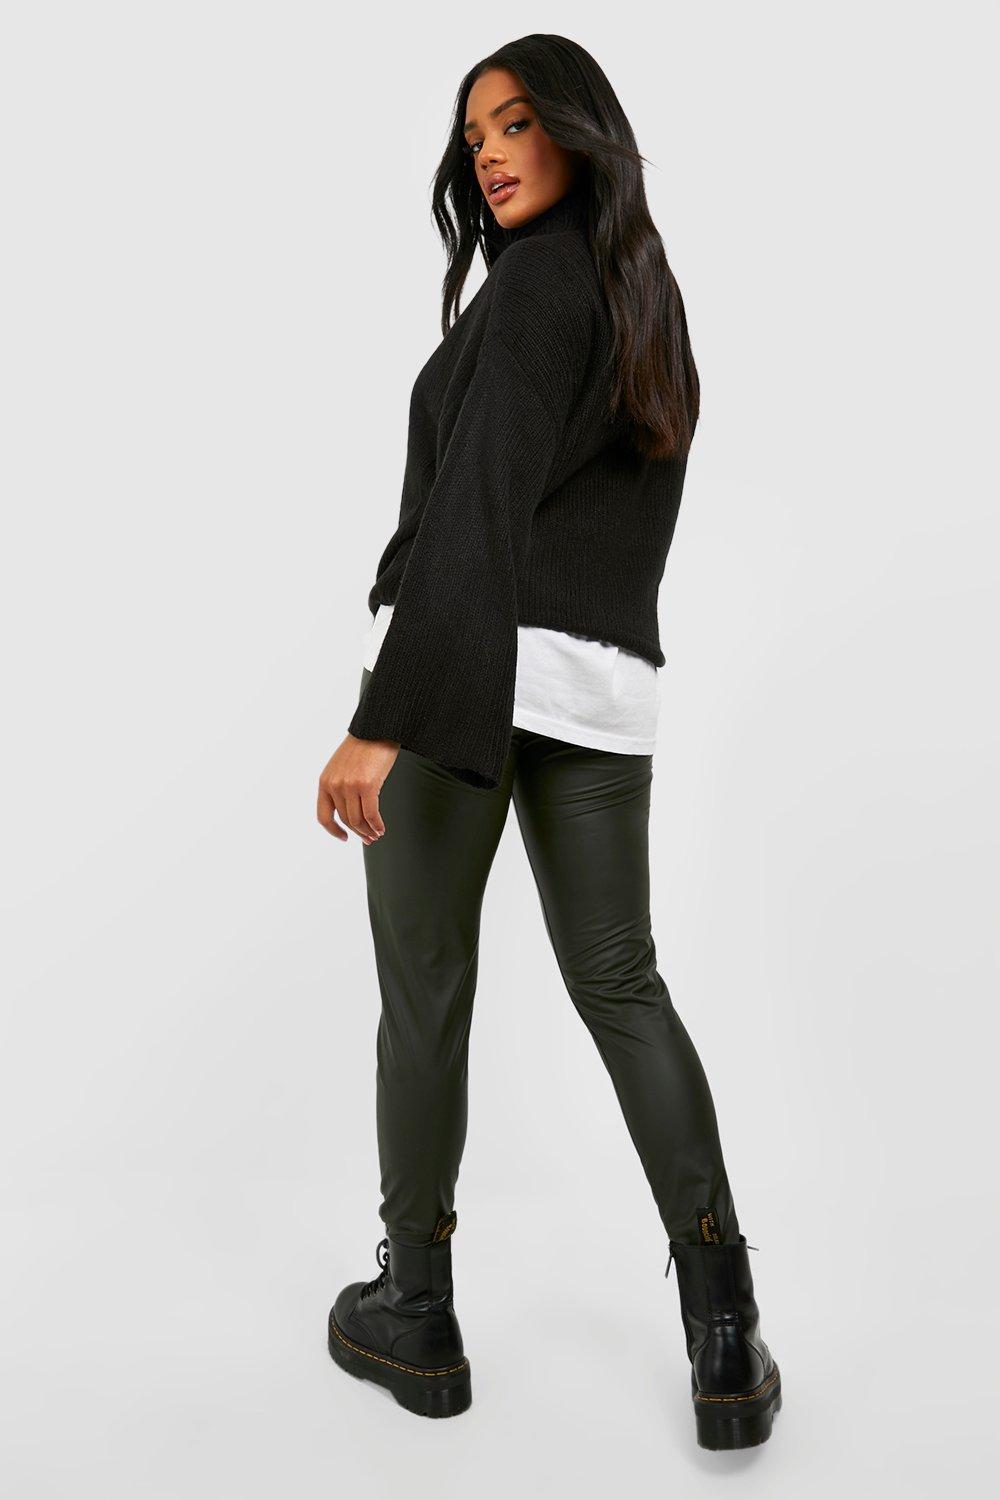 Buy Khaki Green Fleece Lined Leggings from the Next UK online shop